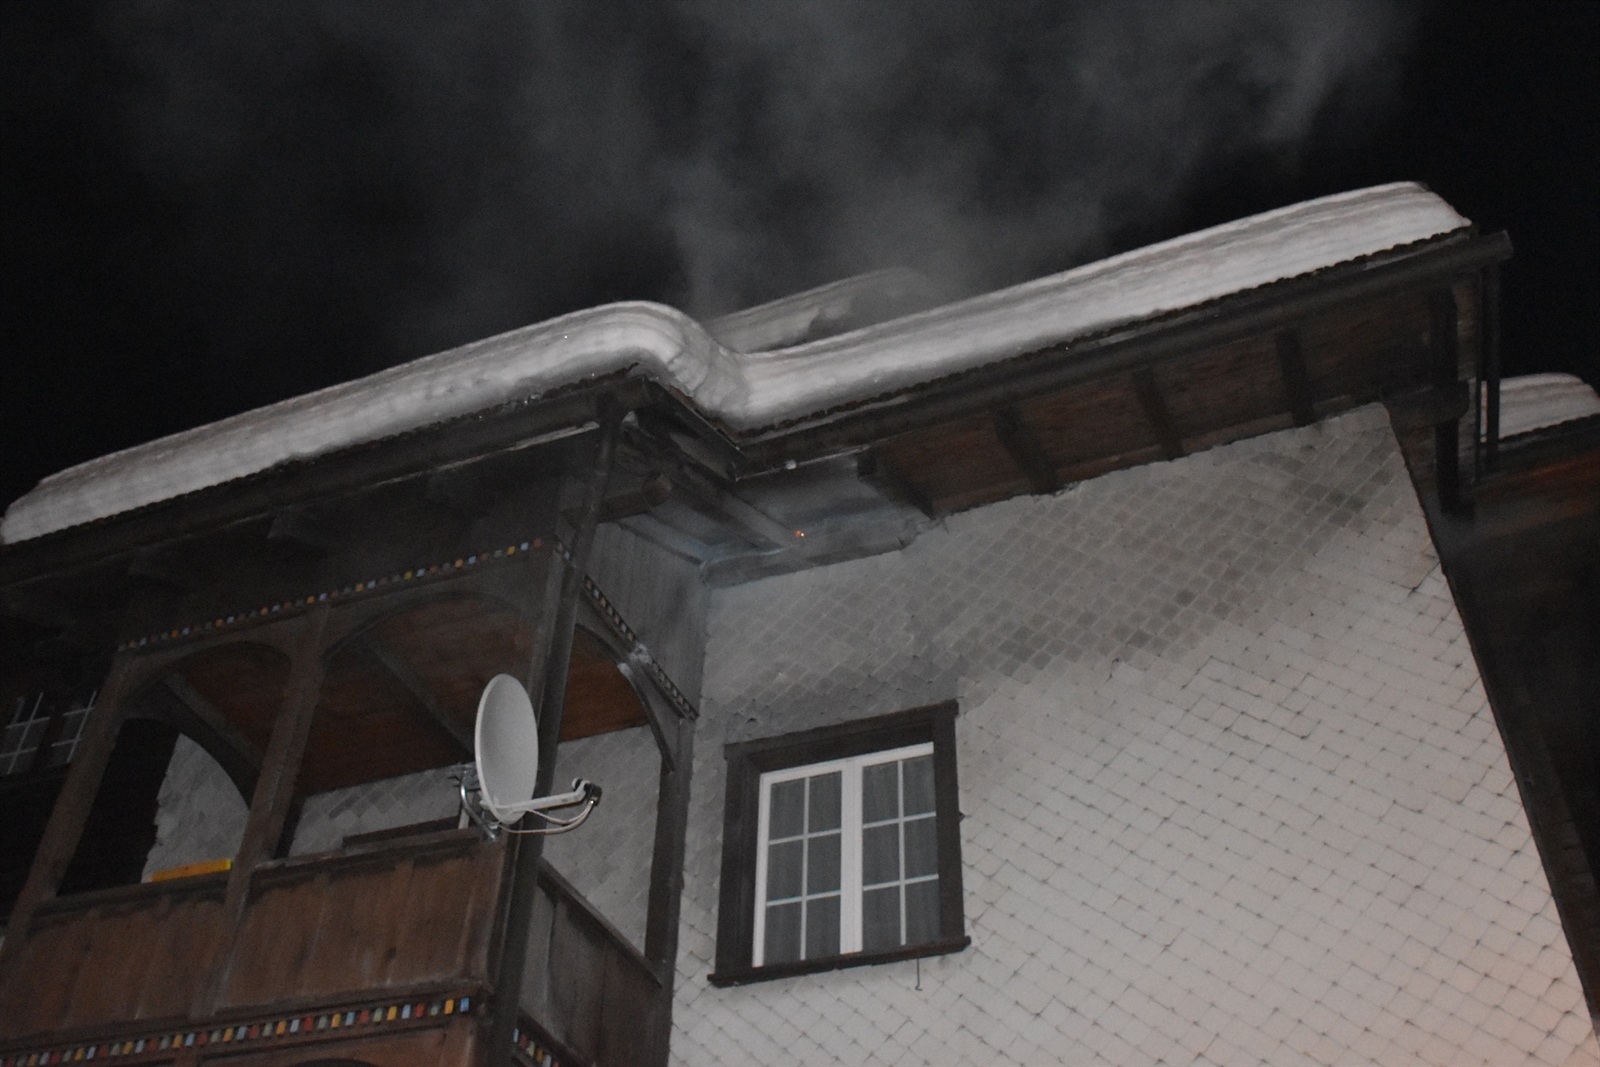 L'engin pyrotechnique est entré vers minuit par un interstice du toit, déclenchant un feu couvant qui a généré un fort dégagement de fumée.